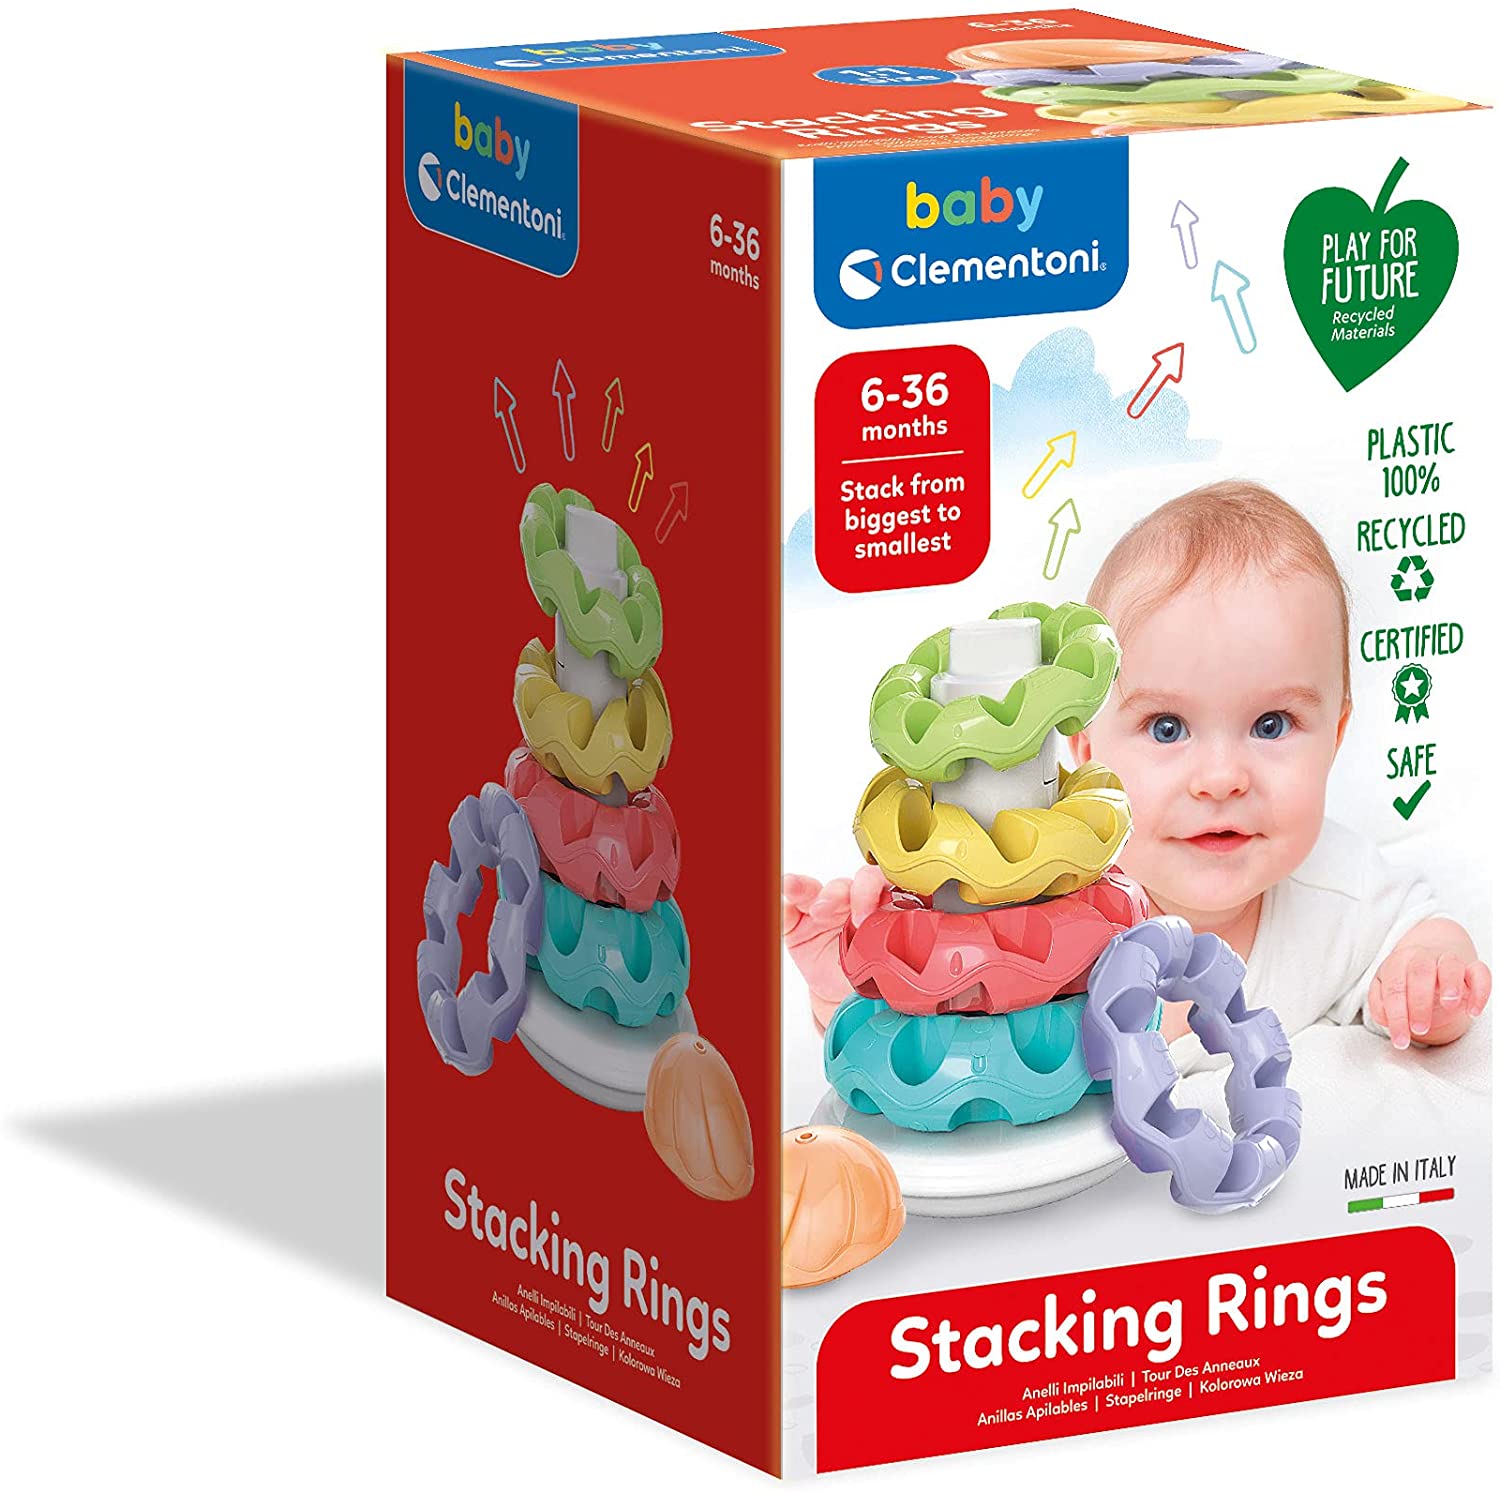 Baby Clementoni - Stacking Rings